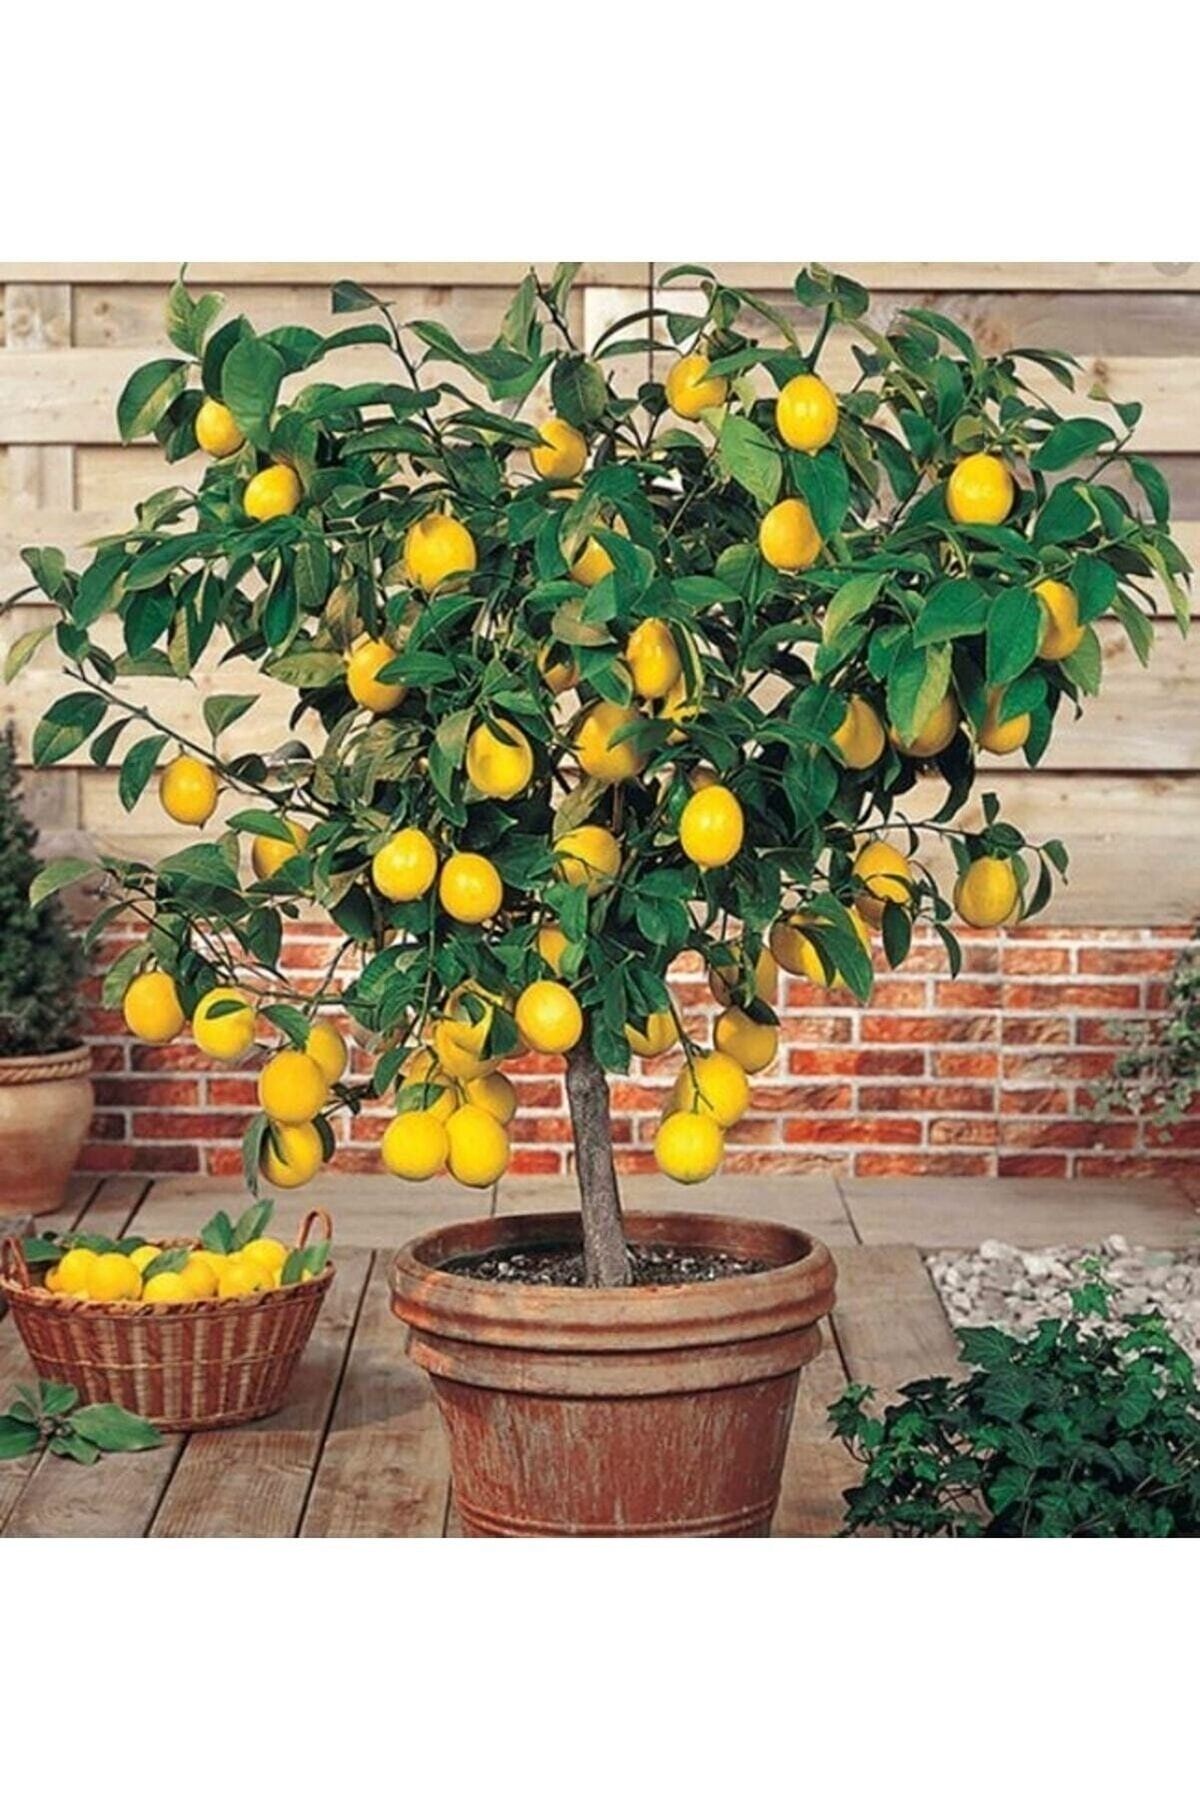 serada decor plant Limon Fidanı Yediveren Mayerlimon Ağacı Fidanı Saksılı 3 Yaş Evde Bakılabilir Bodur (çiçek Hediyeli)